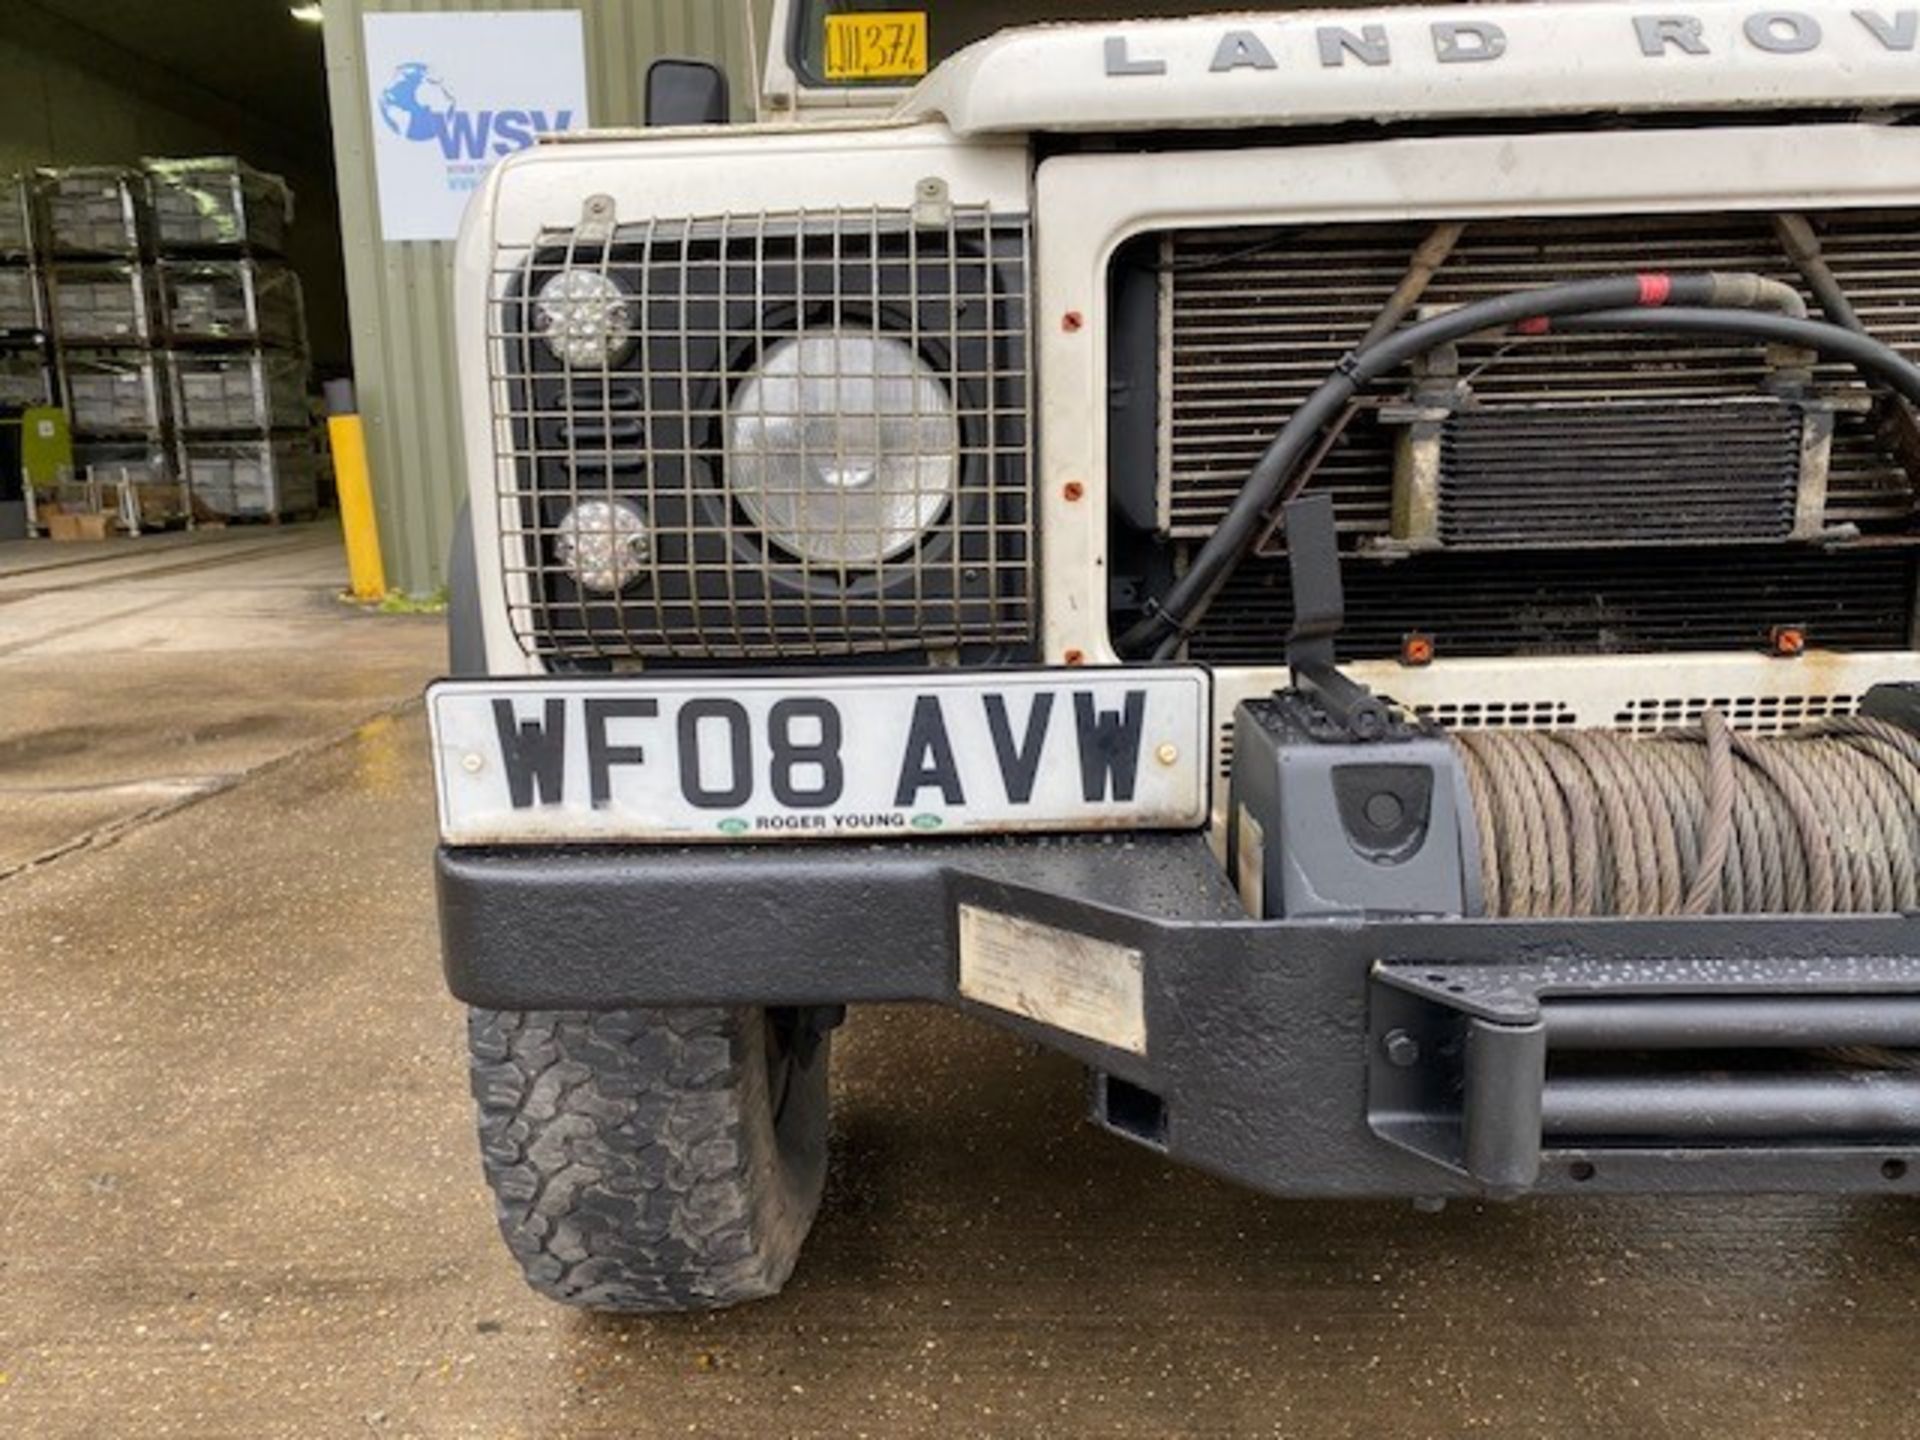 Land Rover Defender 110 2.4 Utility (mobile workshop) - Image 10 of 64